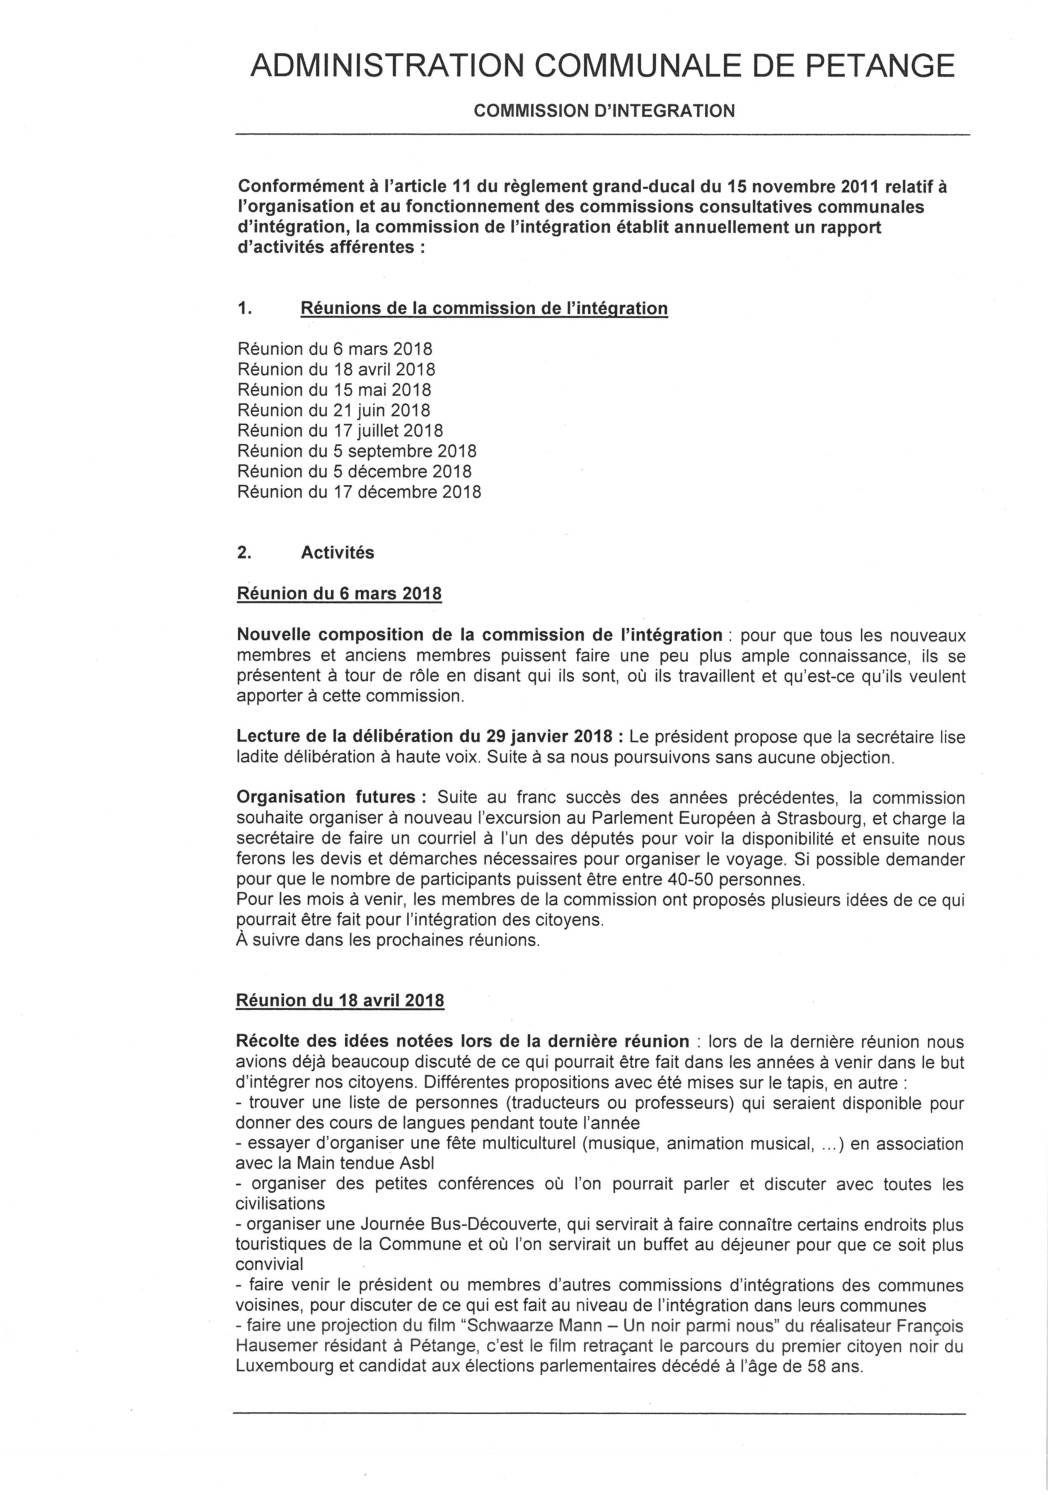 Commission d'intégration de la commune de Pétange - Rapport annuel 2018